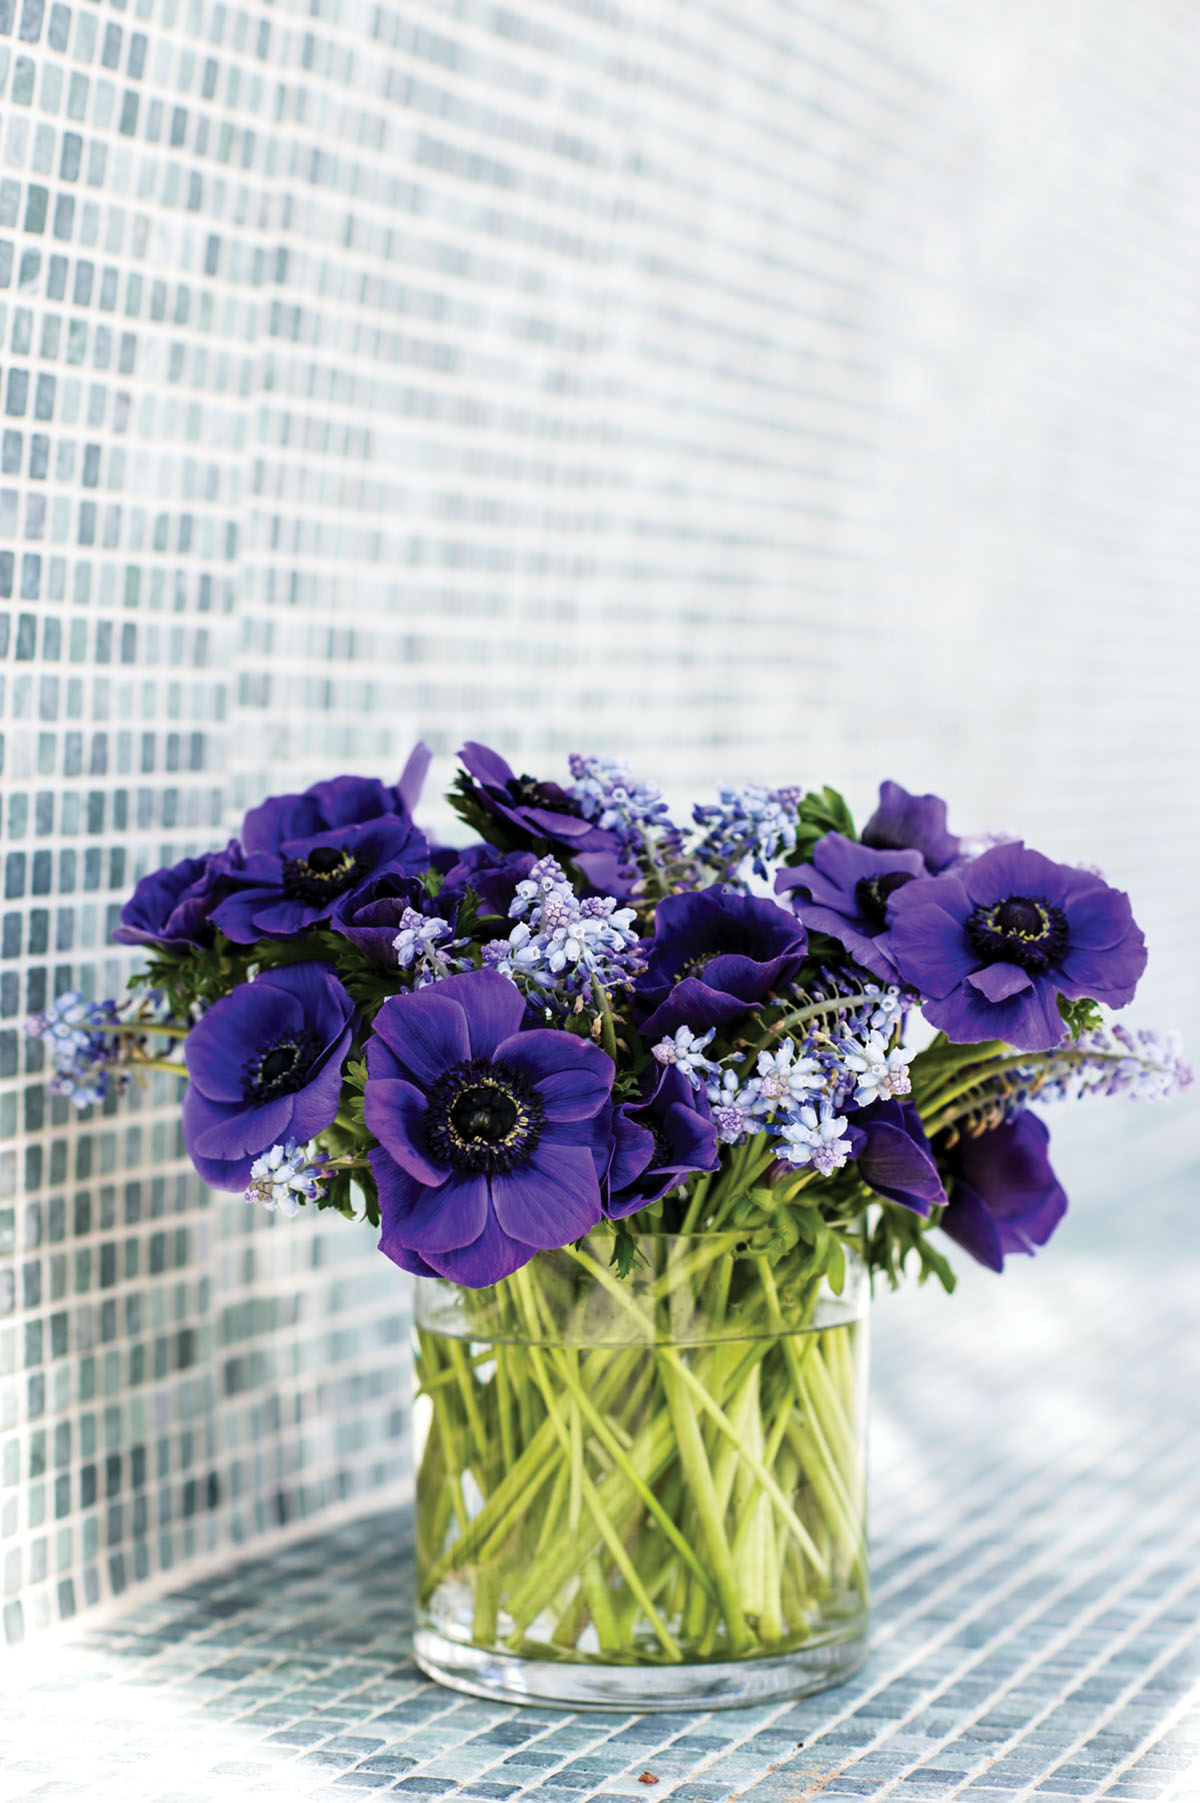 purple flower arrangements set on a blue-green tile mosaic